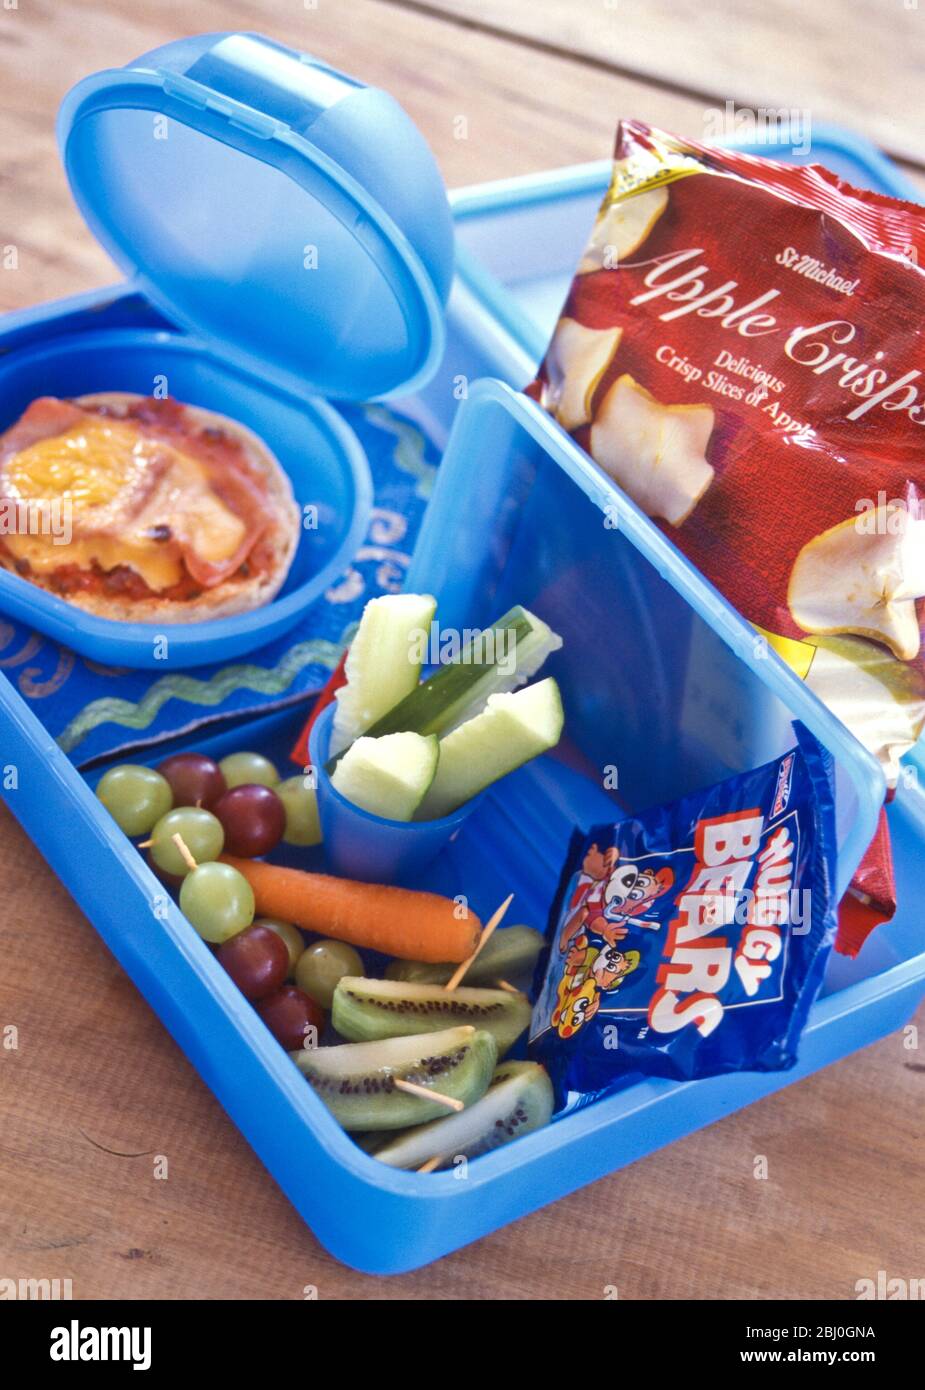 Pranzo al sacco per bambini con verdure fresche, crude, panini e patatine di mele, in scatole di plastica blu - Foto Stock